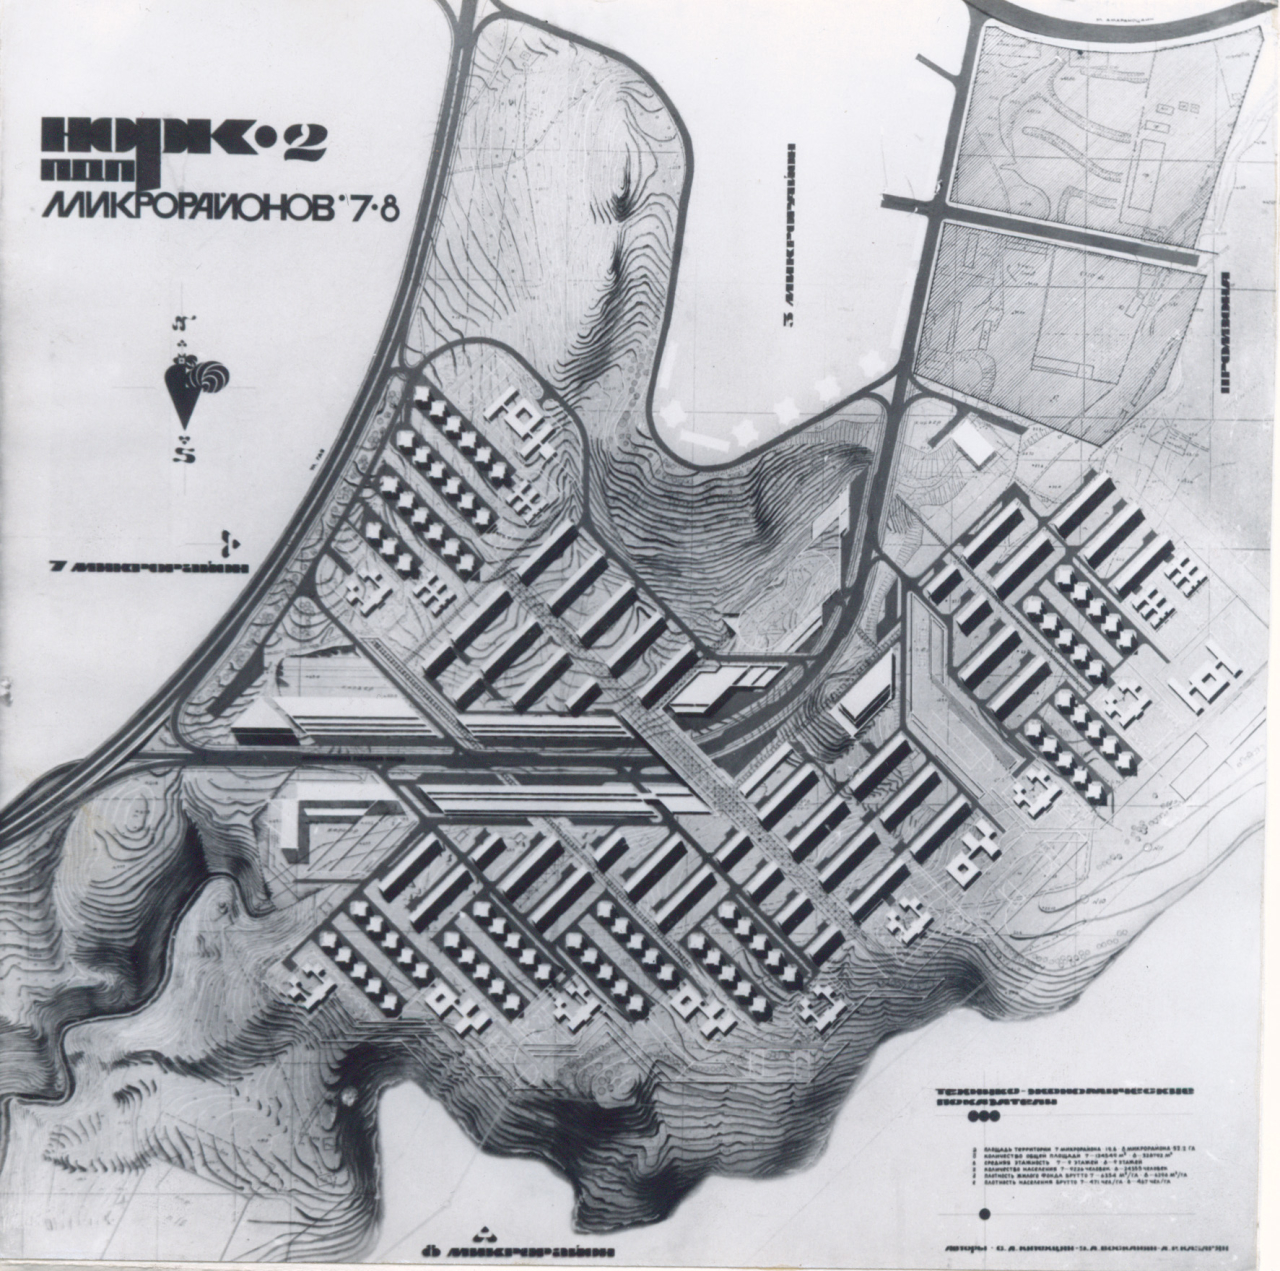 Նորքի 2-րդ զանգվածի բնակելի շրջանի  մանրամասն պլանավորման նախագիծ